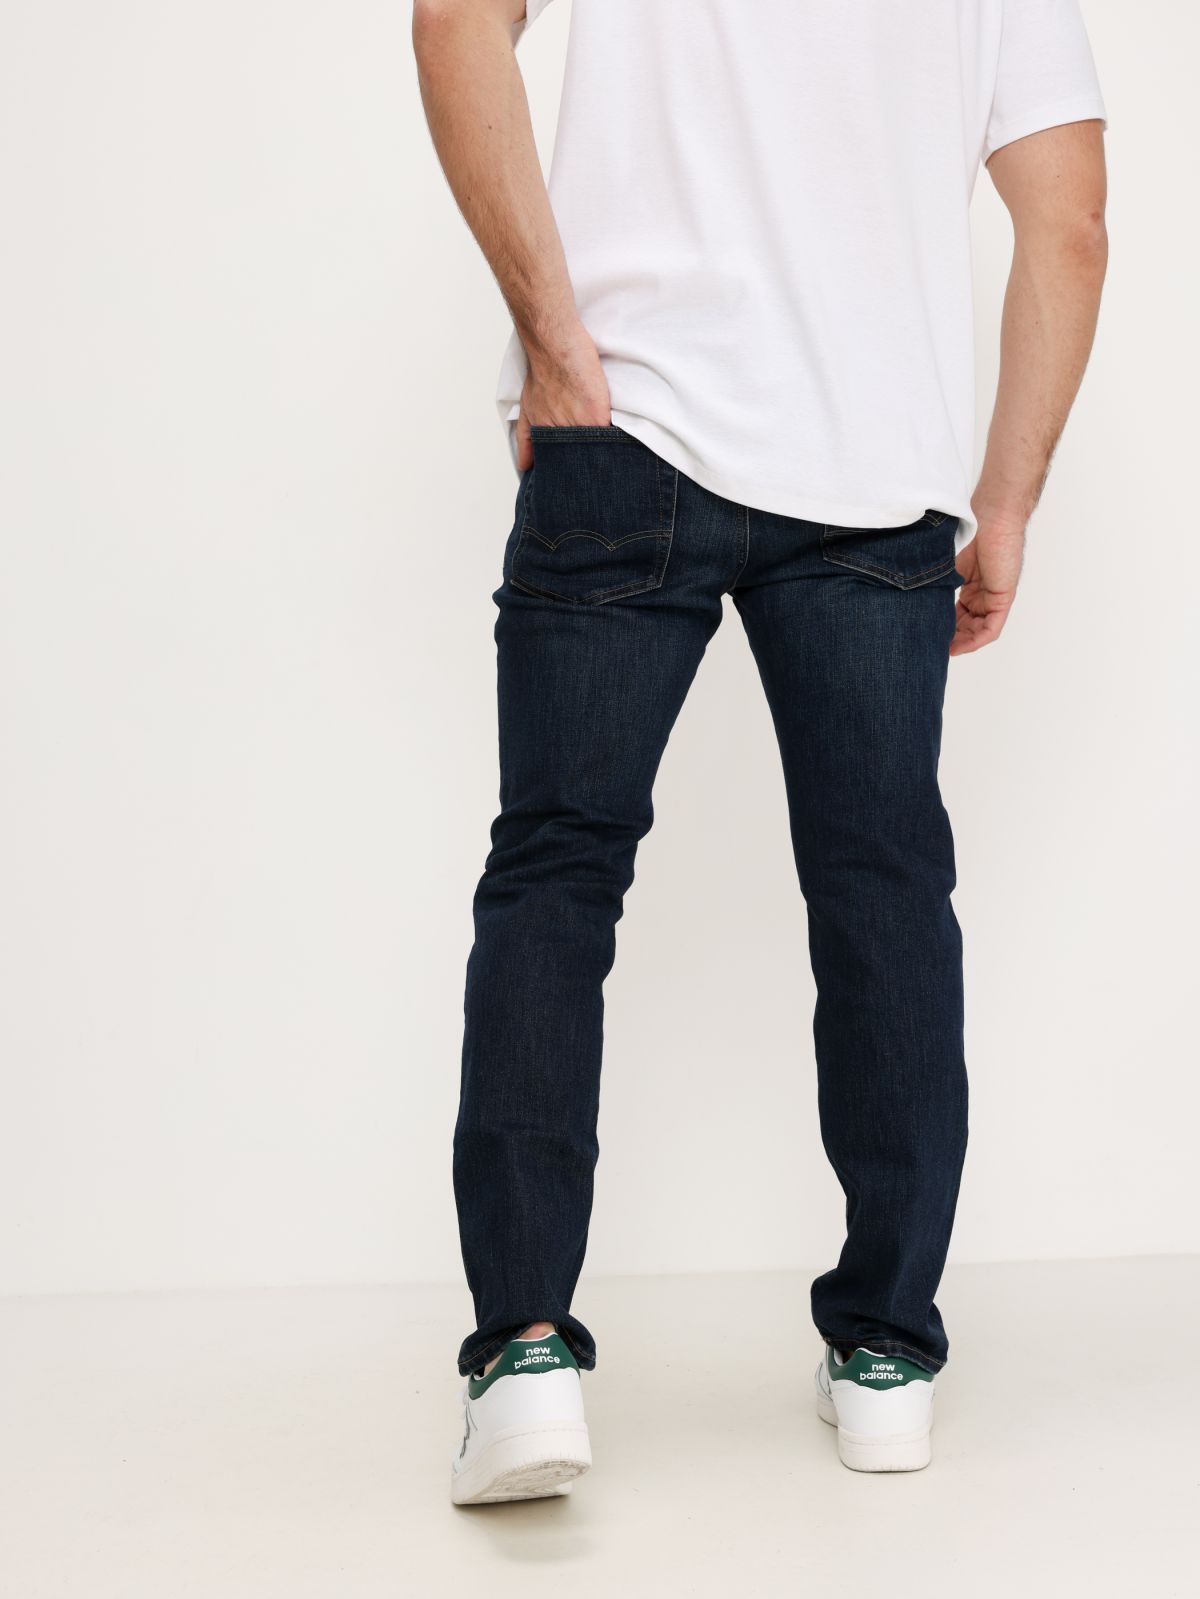  ג'ינס ארוך בשטיפה כהה של AMERICAN EAGLE